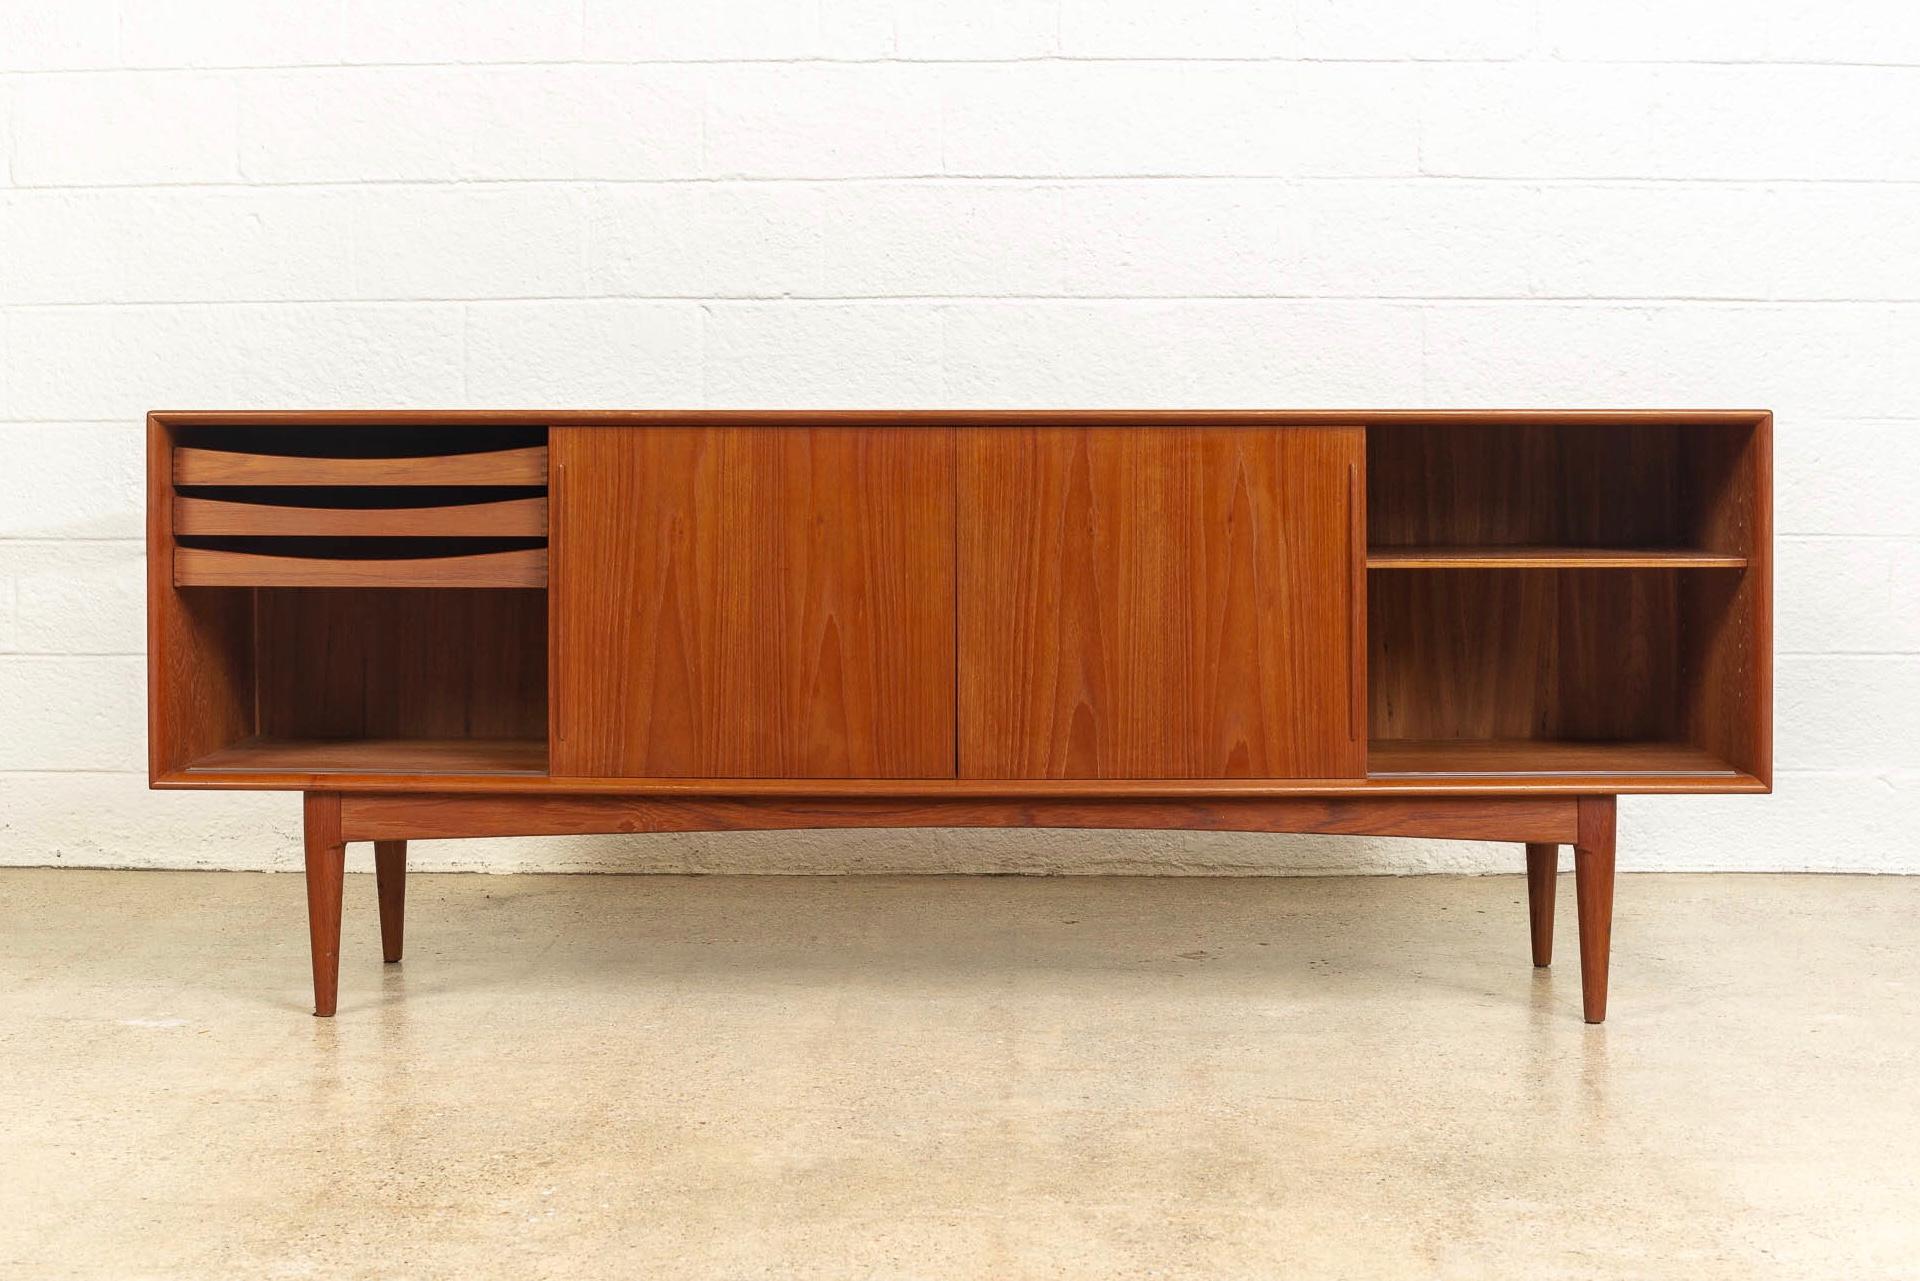 Wood Midcentury Danish Modern Bernhard Pedersen & Son Sideboard Credenza Buffet